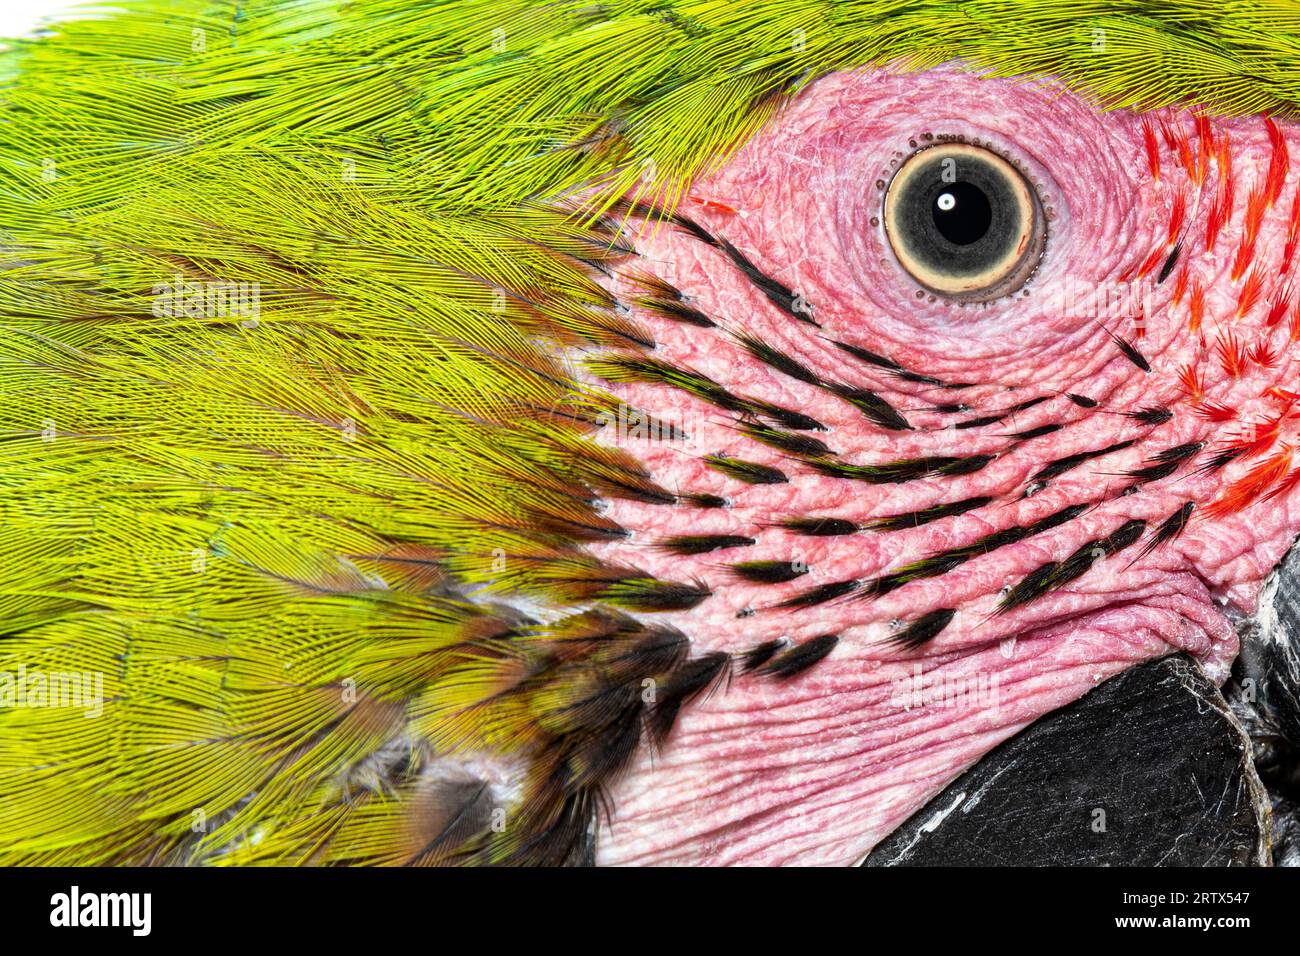 Foto de cabeza macro de un gran pájaro guacamayo verde, detalles en los ojos y pequeñas plumas, Ara ambiguus, aislado en blanco Foto de stock